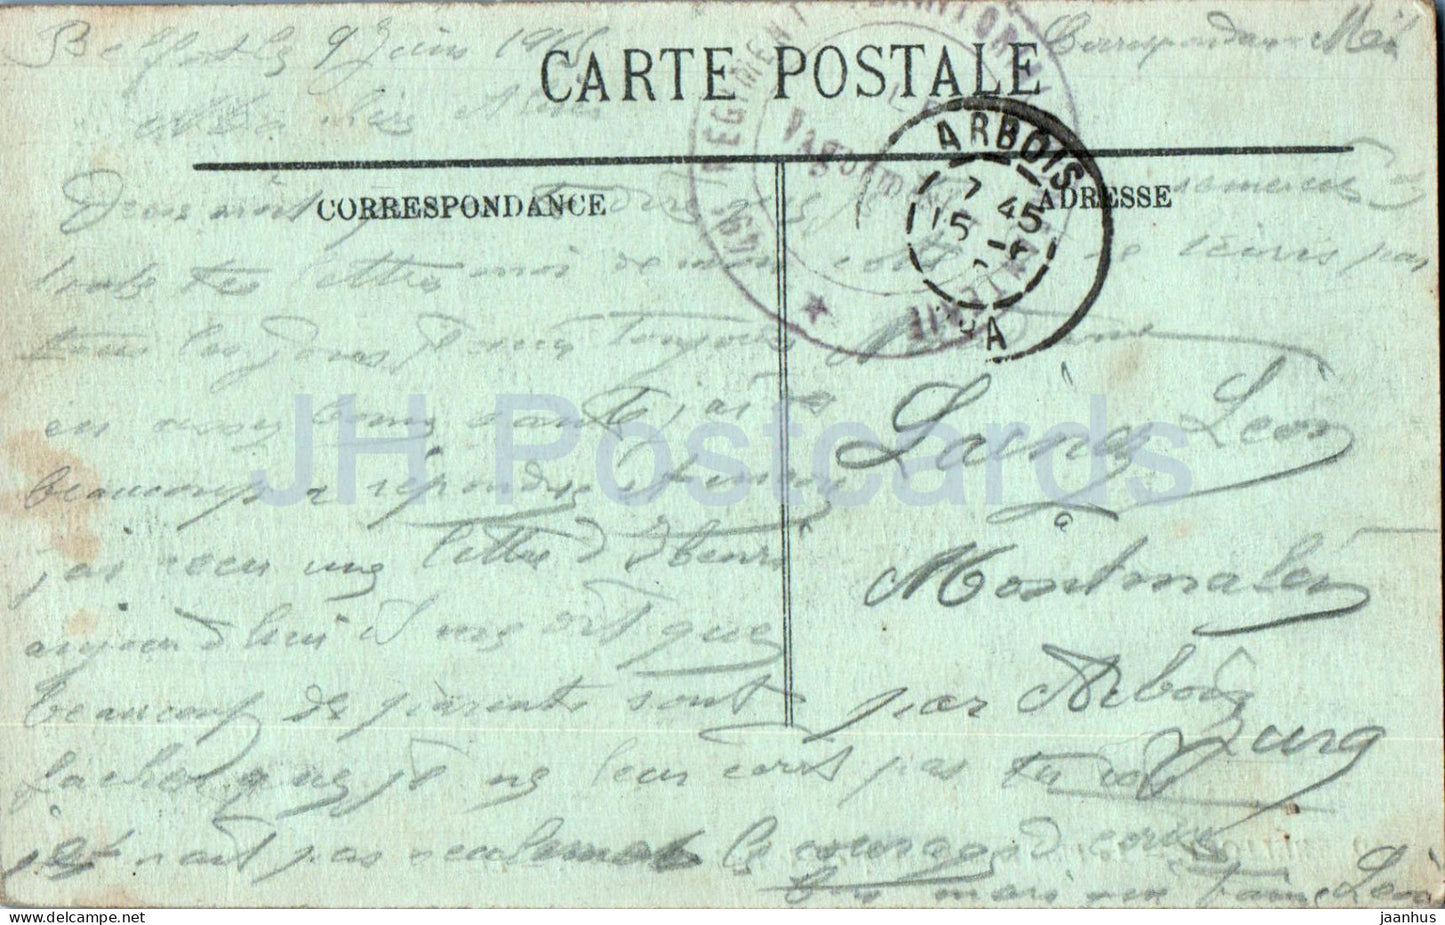 Belfort - La Place de la Republique et le Boulevard Carnot - military mail - 69 - 1915 - old postcard - France - used